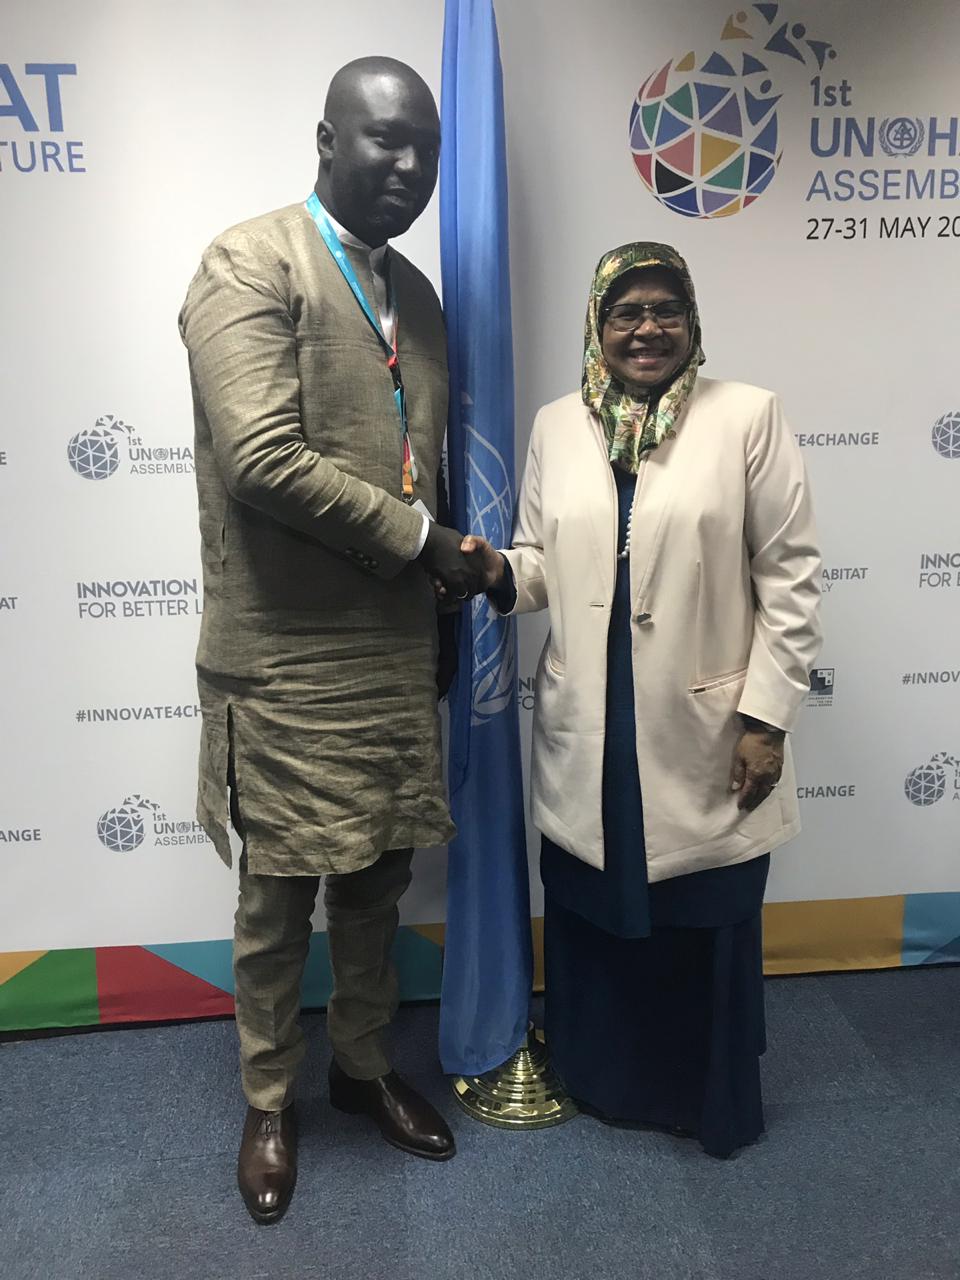 PHOTOS - Le Sénégal a été élu le 27 mai à Nairobi, au Conseil exécutif d’ONU HABITAT pour un mandat de 4 ans.